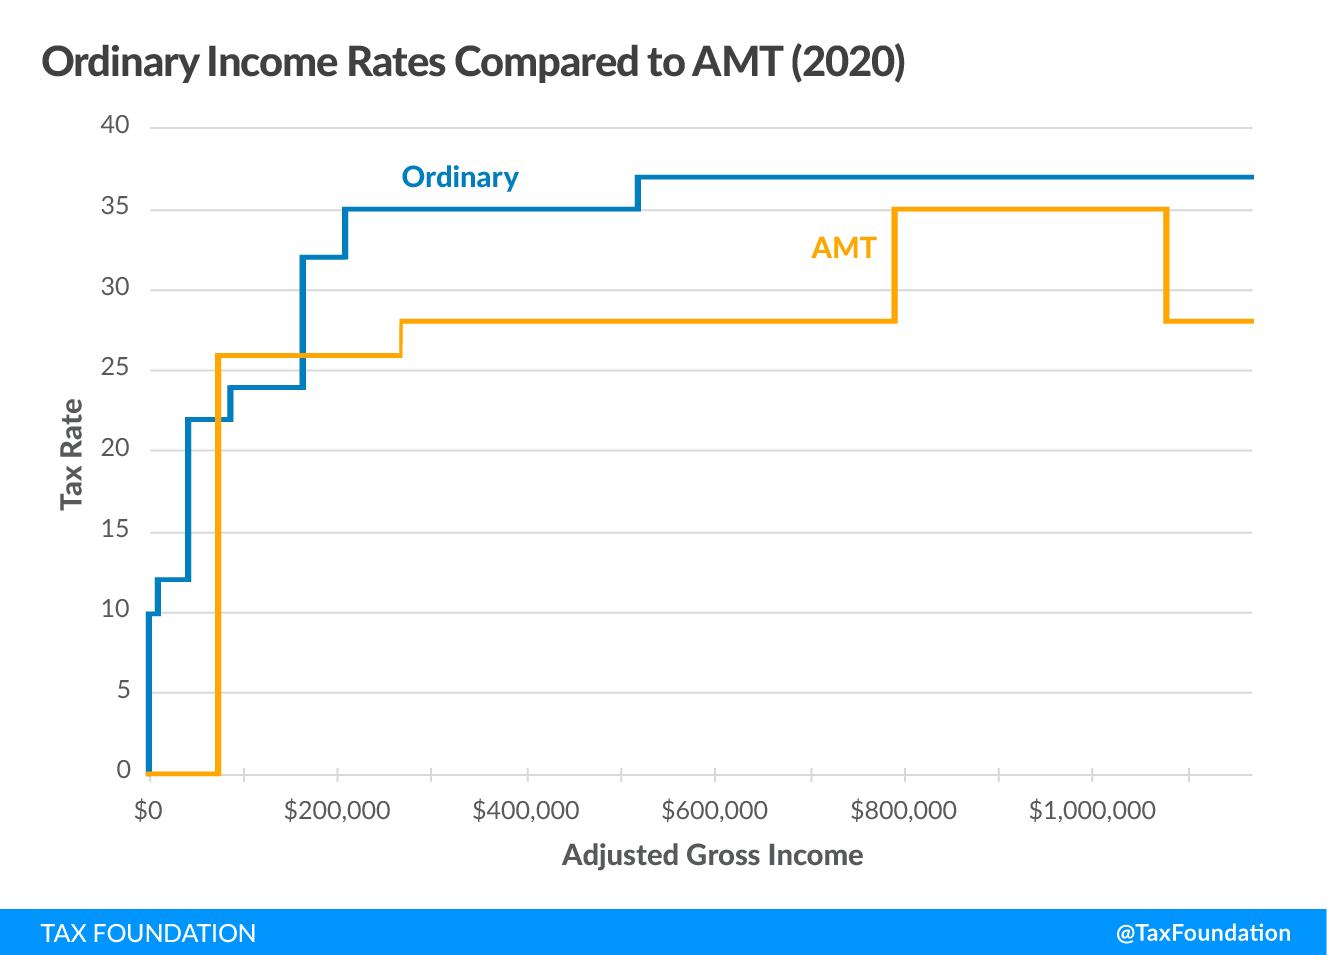 Alternative Minimum Tax (AMT)